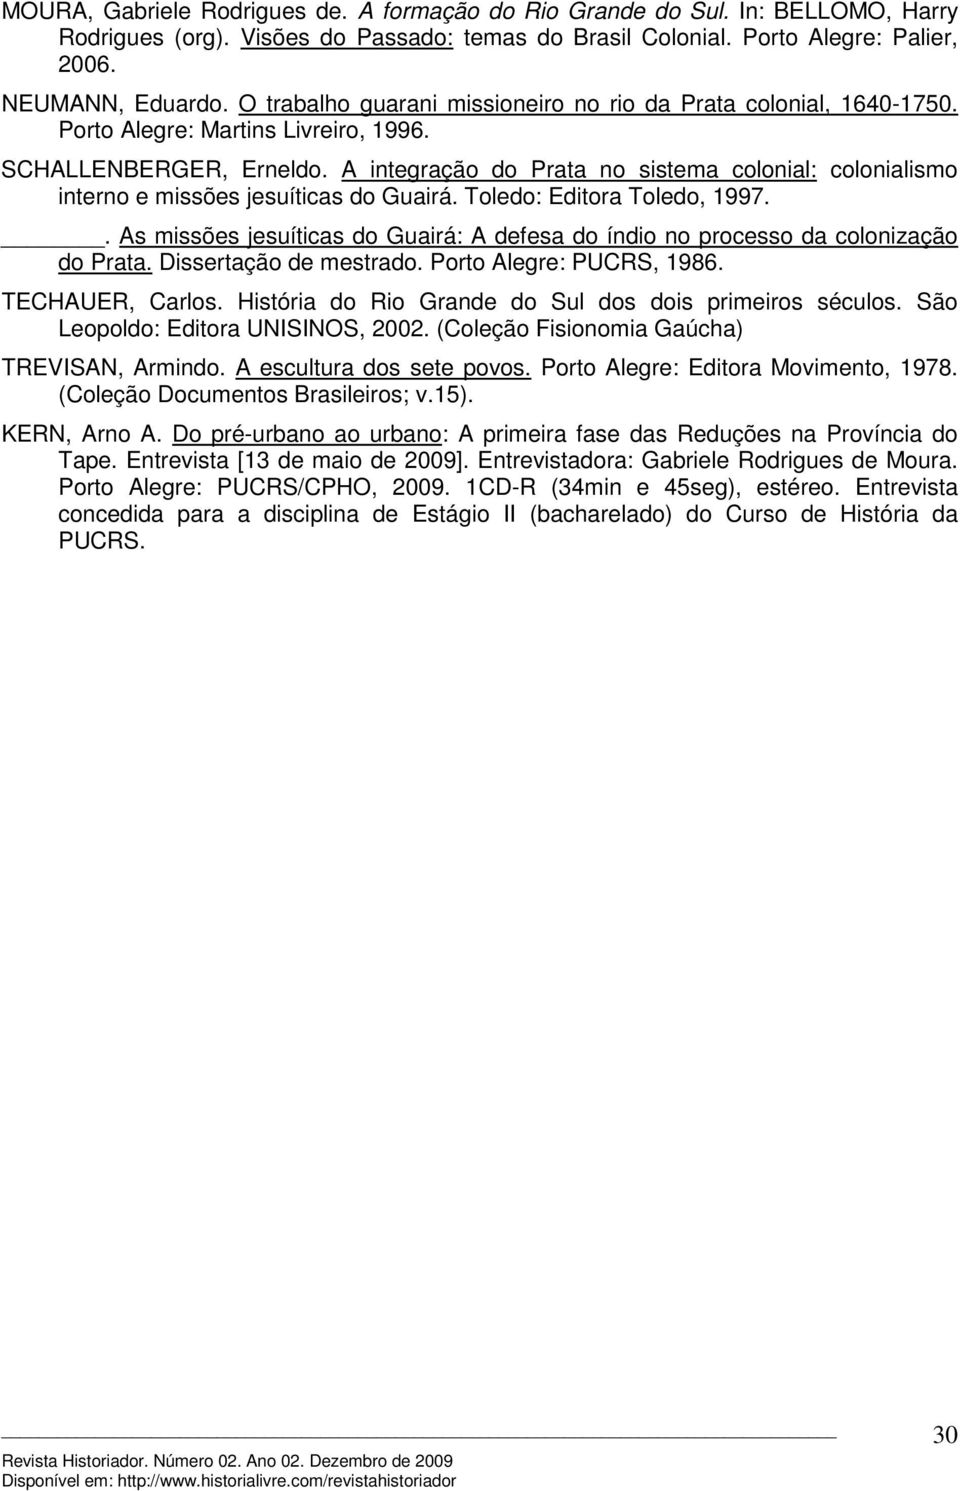 A integração do Prata no sistema colonial: colonialismo interno e missões jesuíticas do Guairá. Toledo: Editora Toledo, 1997.